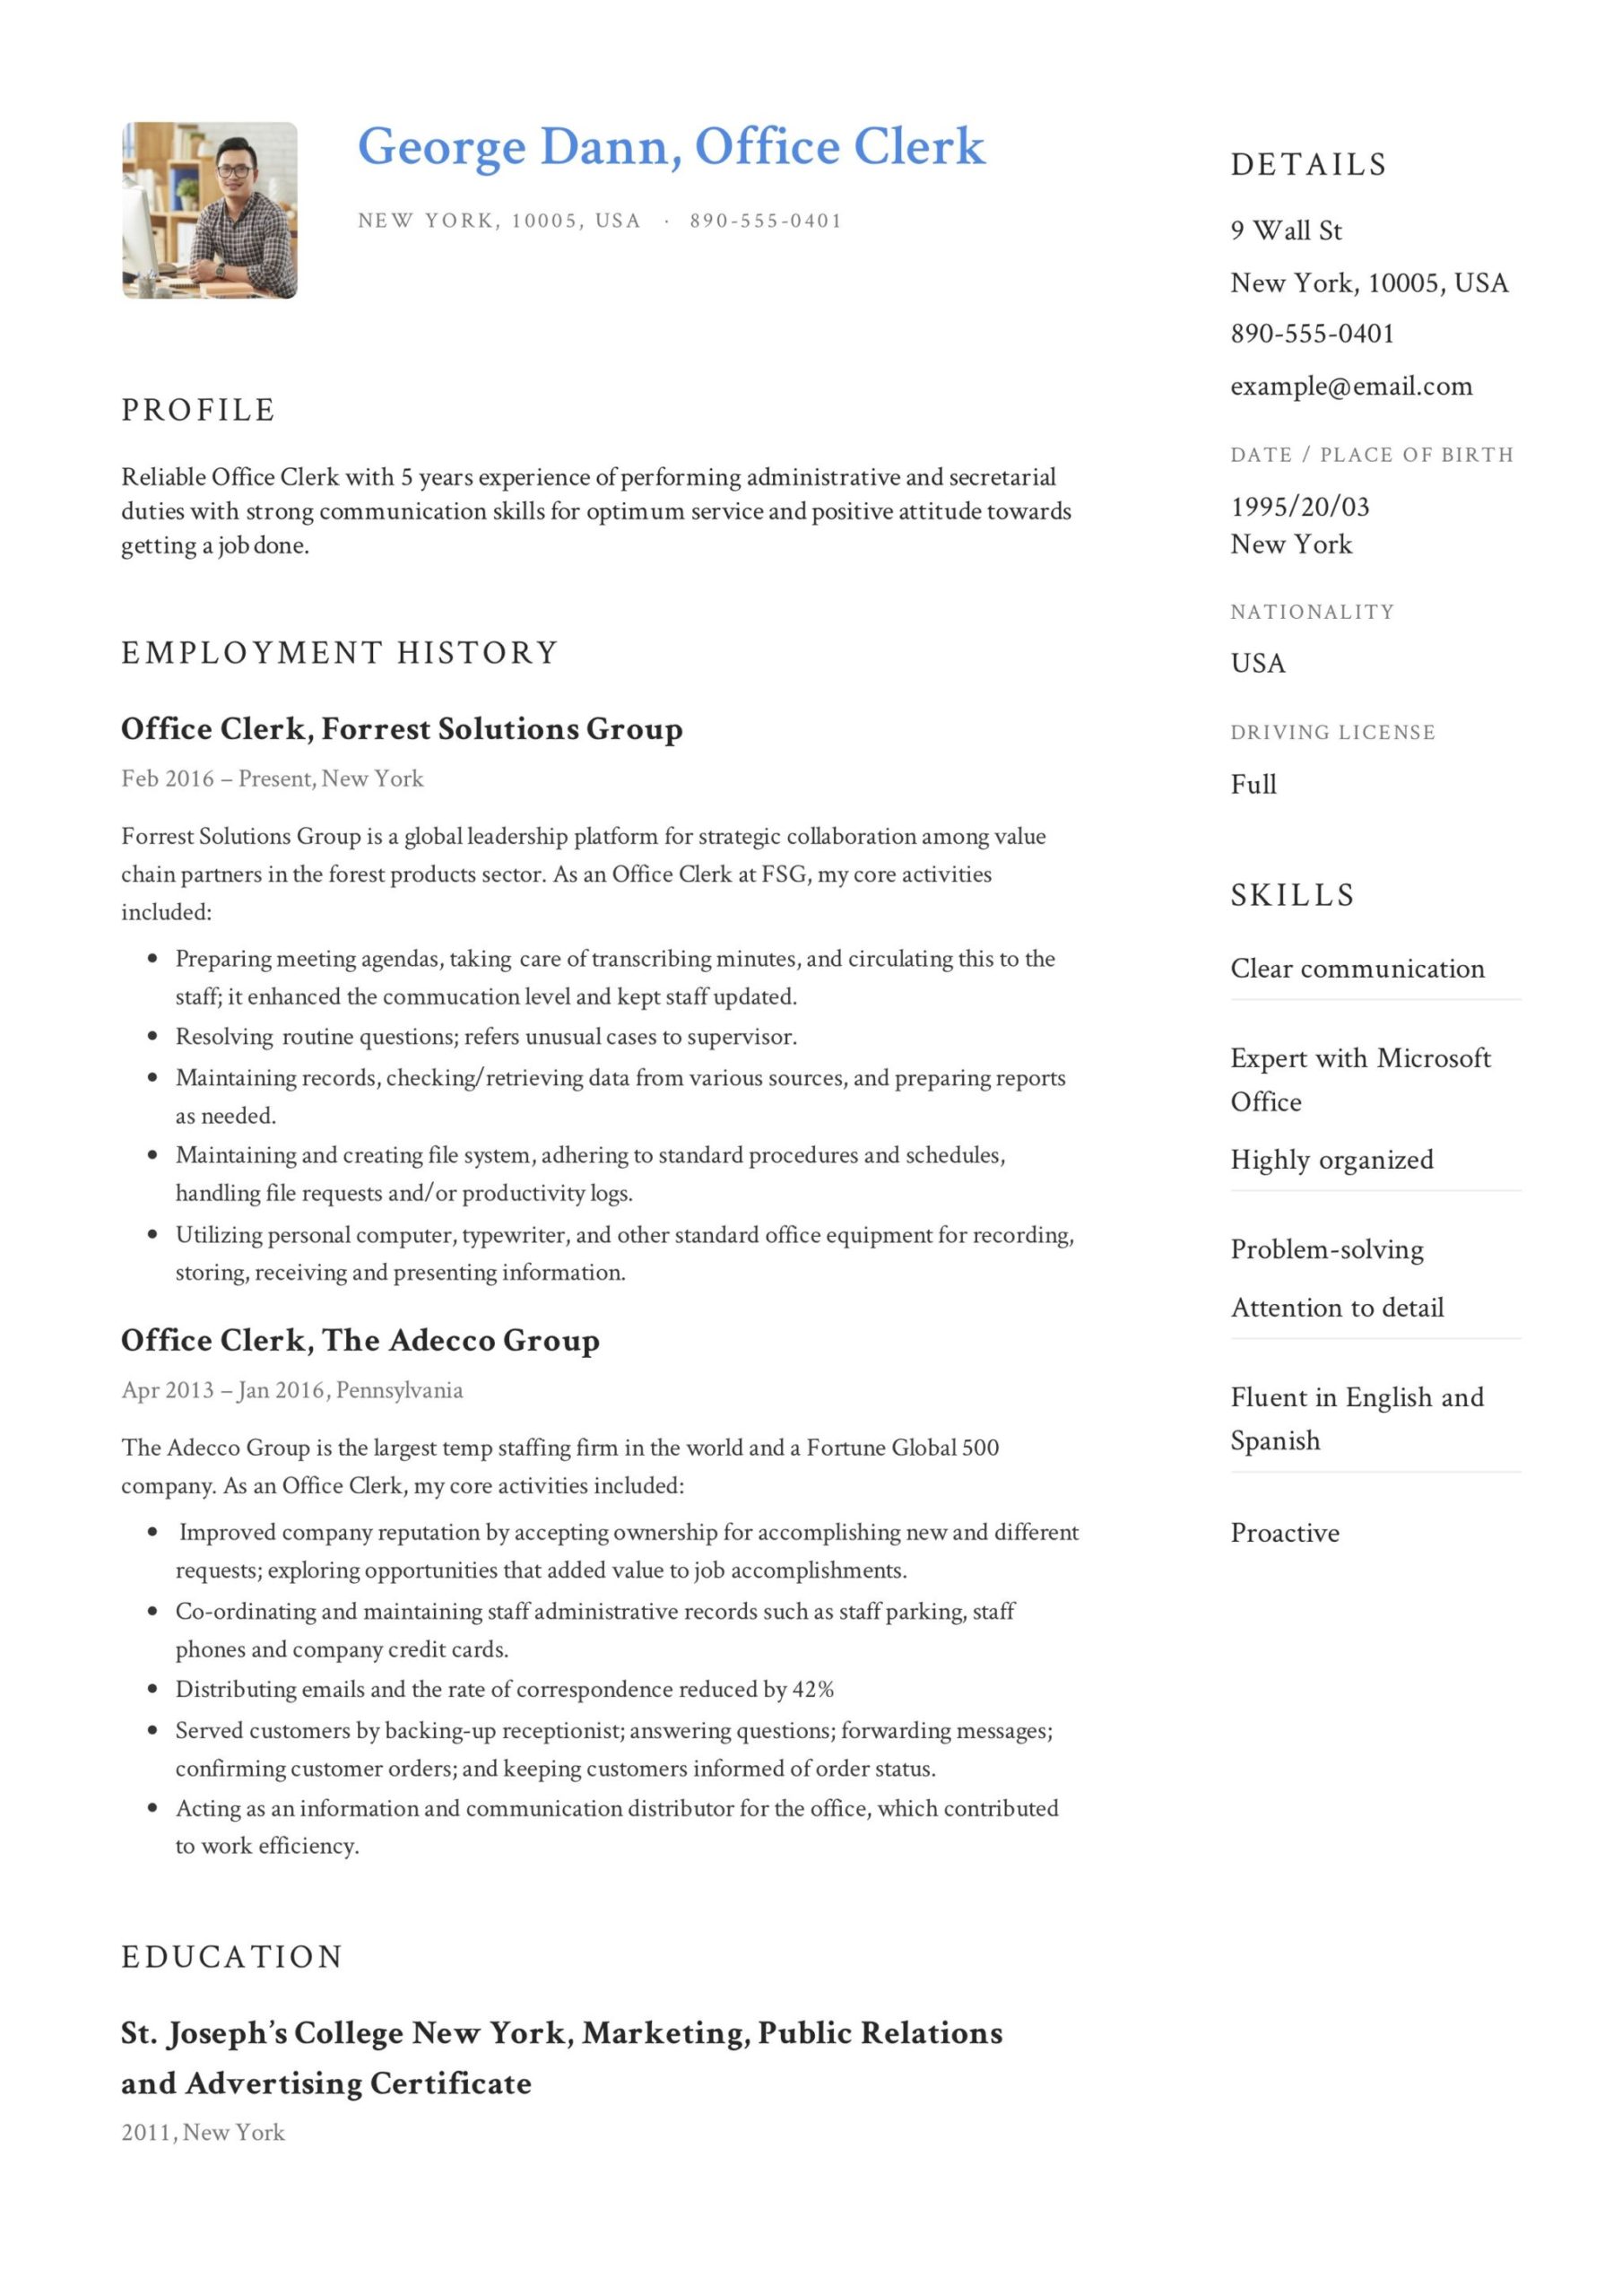 Sample Resume for School Office Clerk Office Clerk Resume & Guide  12 Samples Pdf 2021